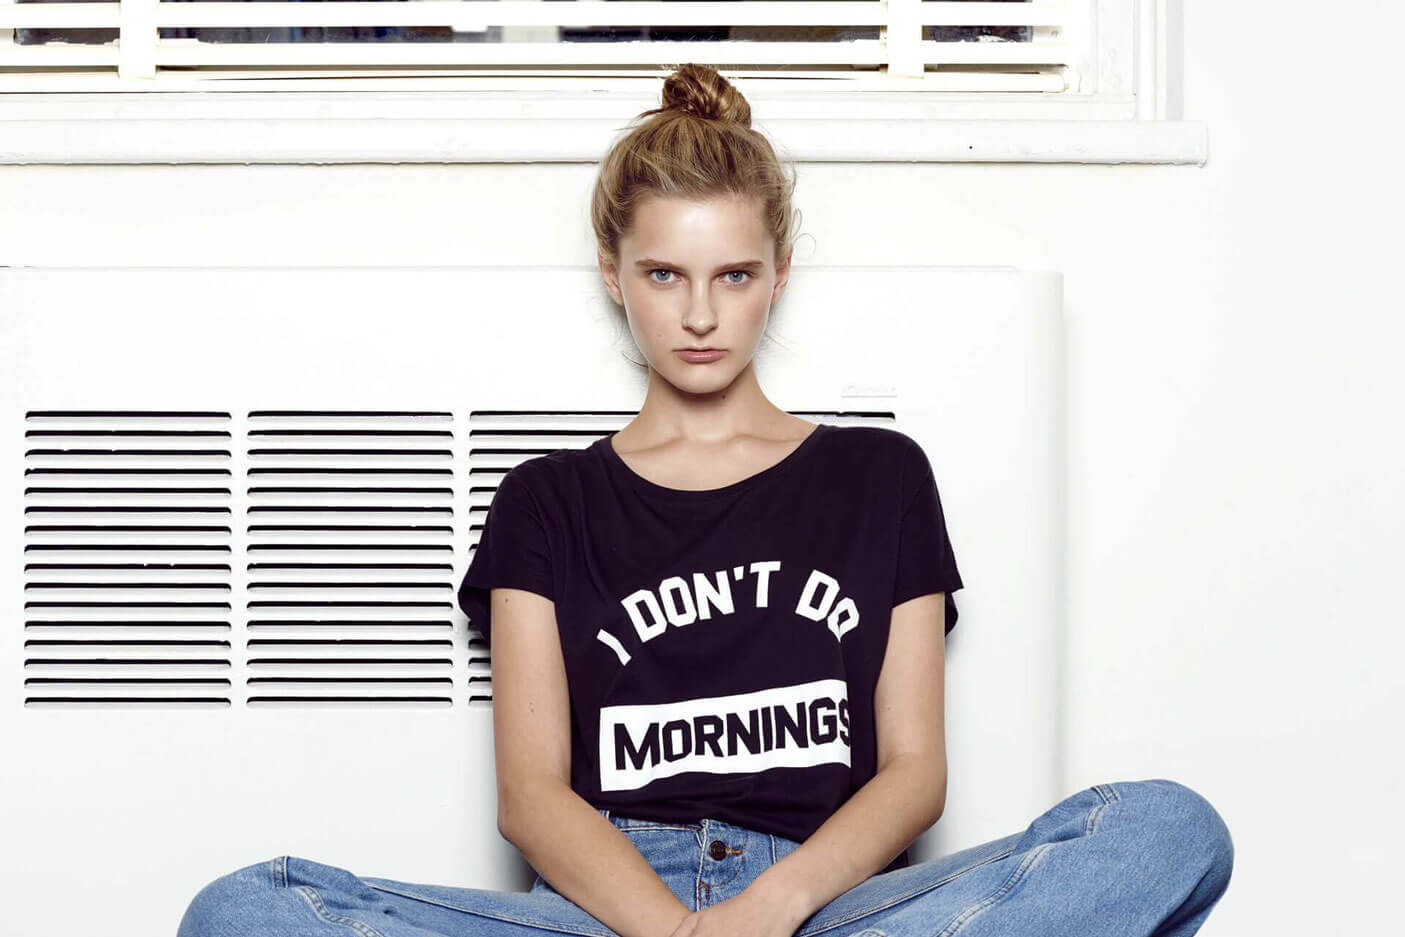 Short-sleeve black 'I Don't Do Mornings' shirt